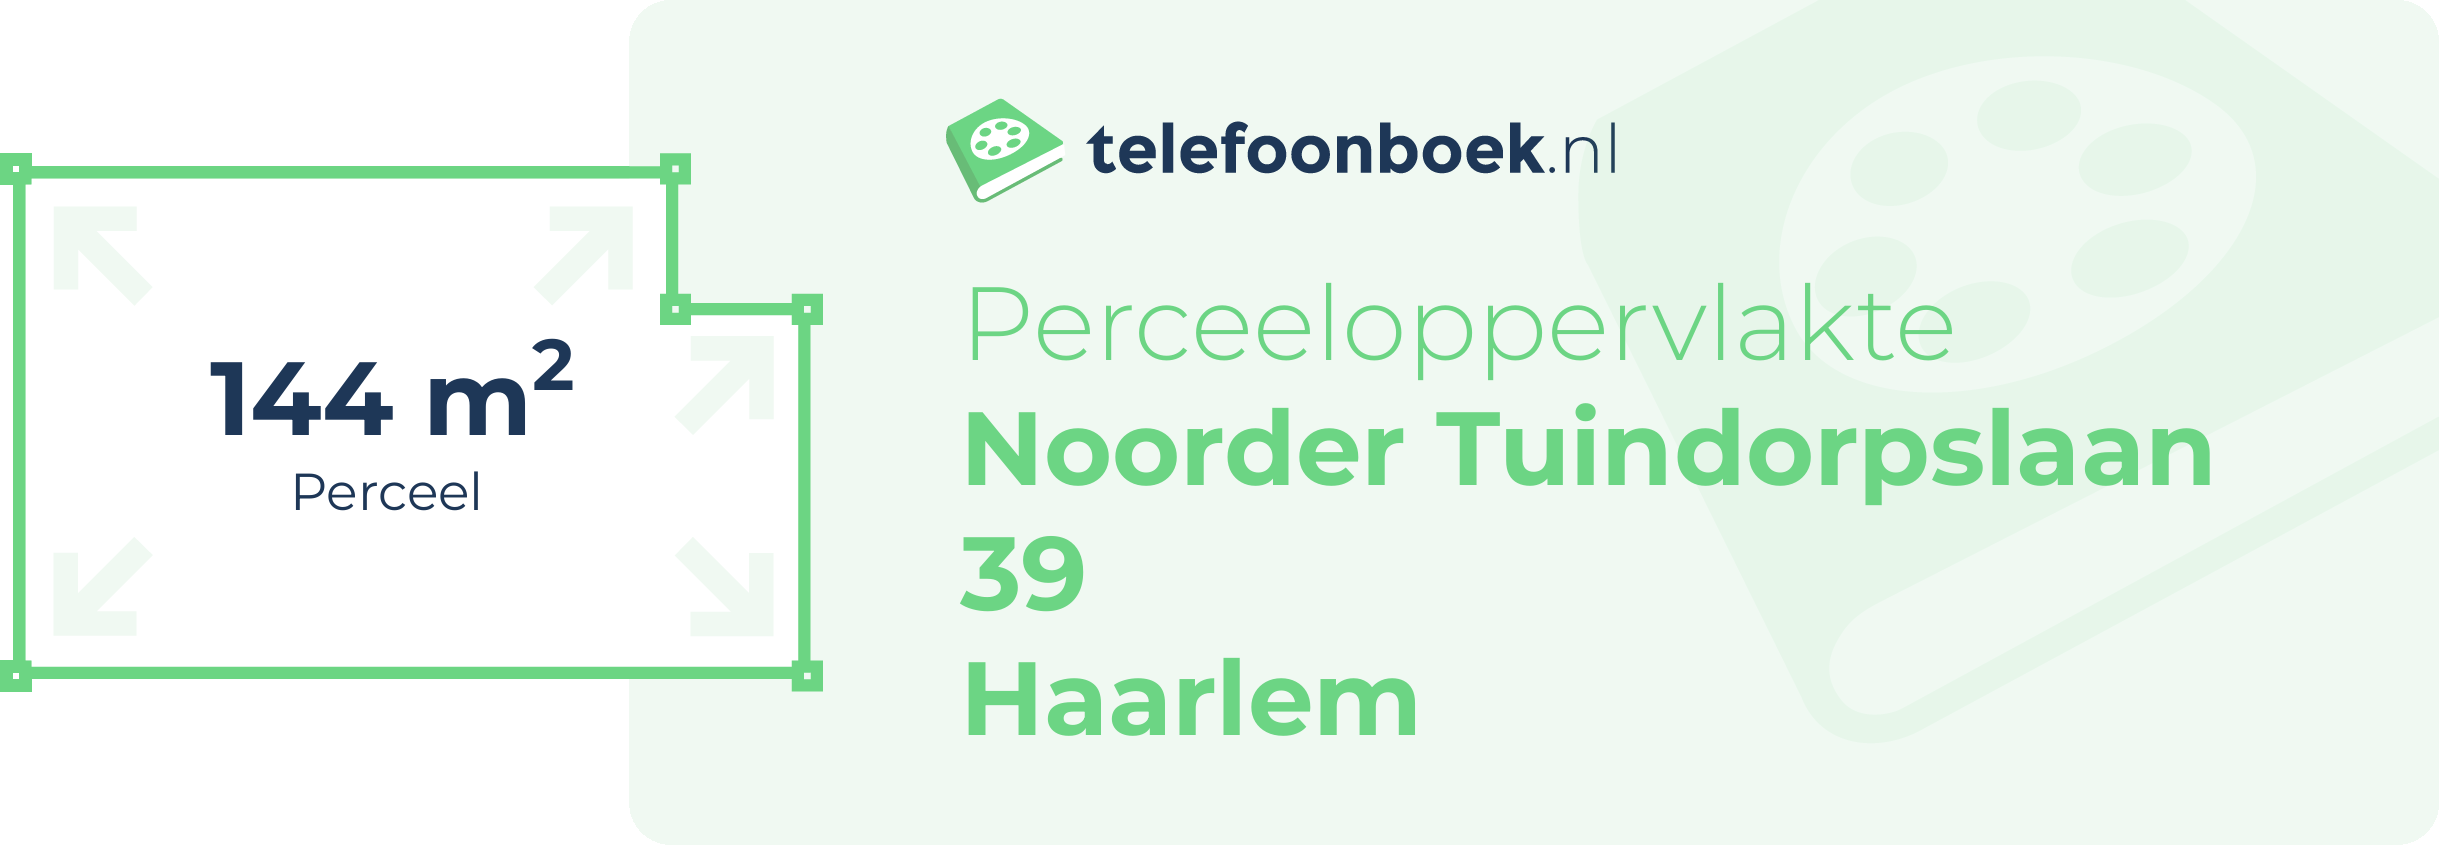 Perceeloppervlakte Noorder Tuindorpslaan 39 Haarlem